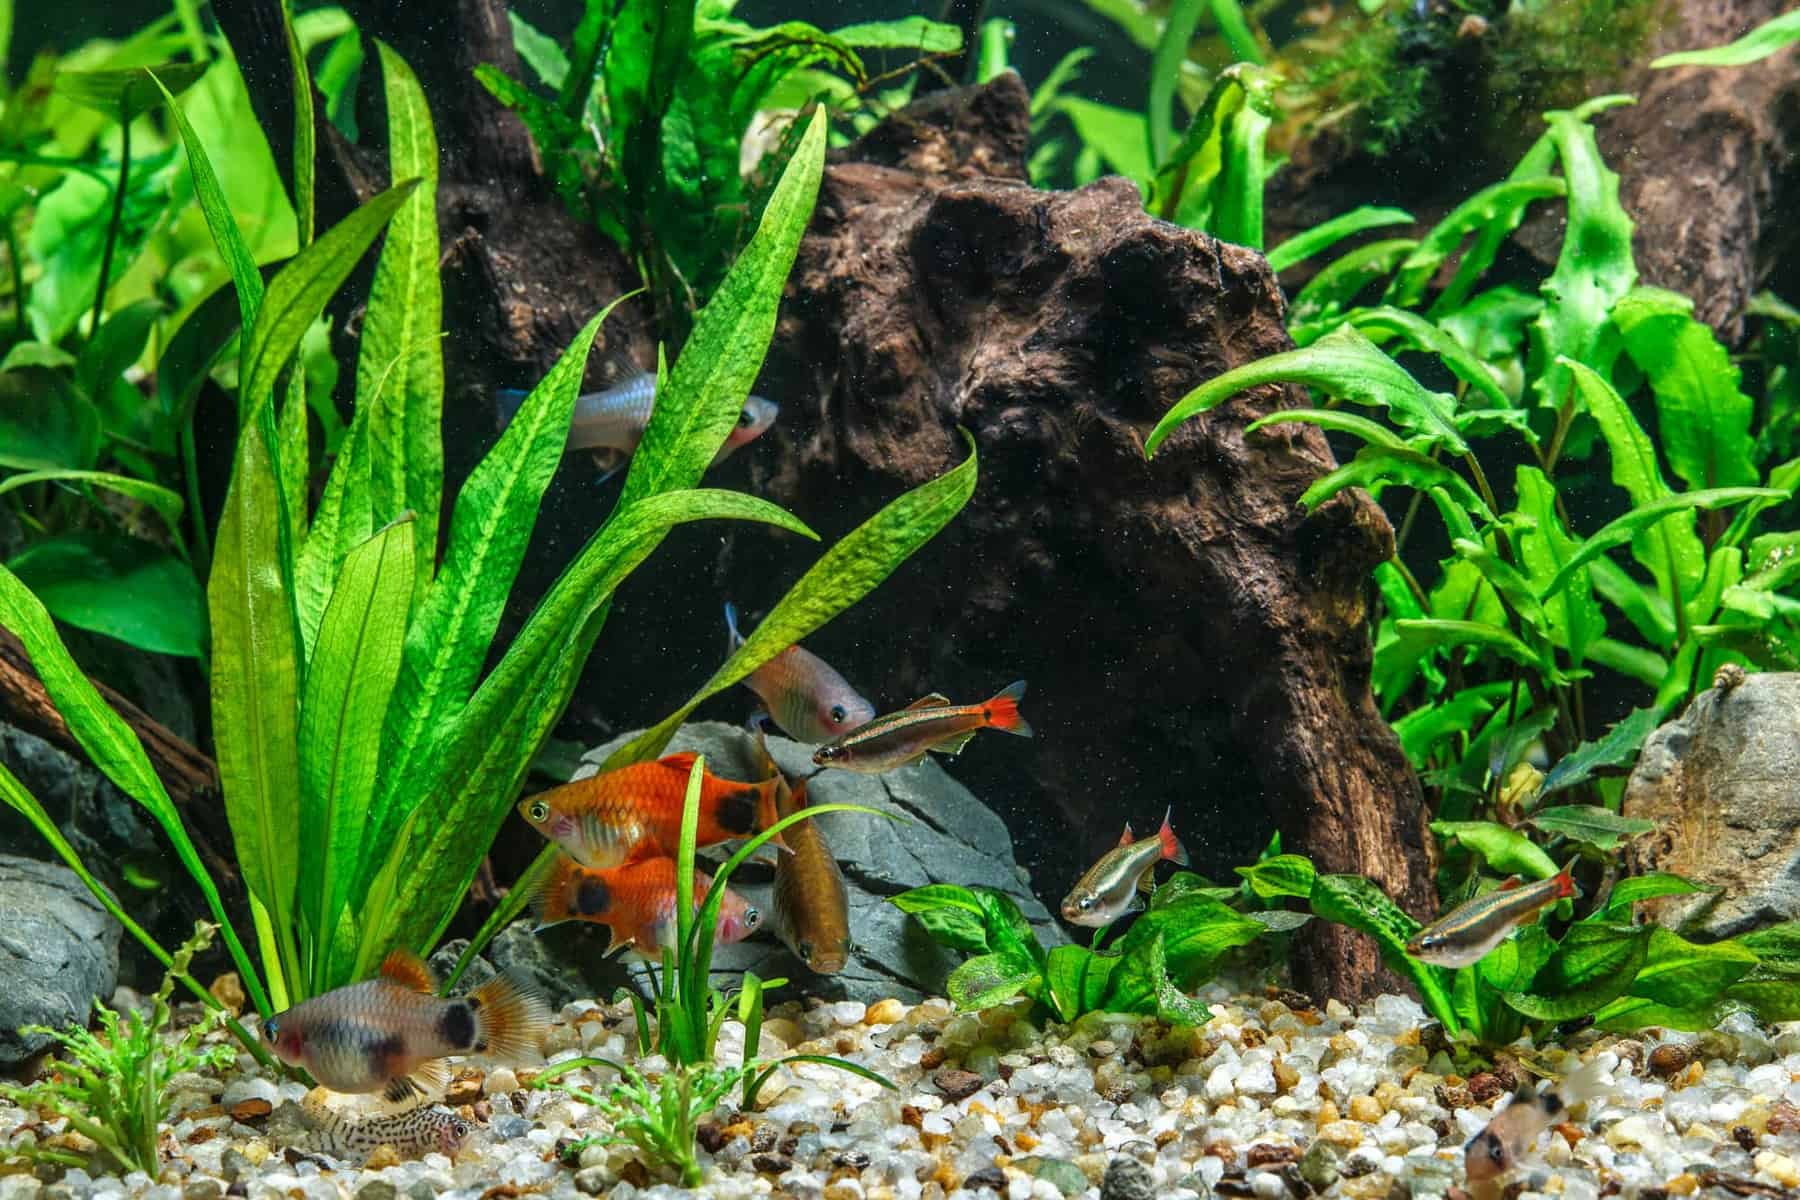 Background Aquarium Plants